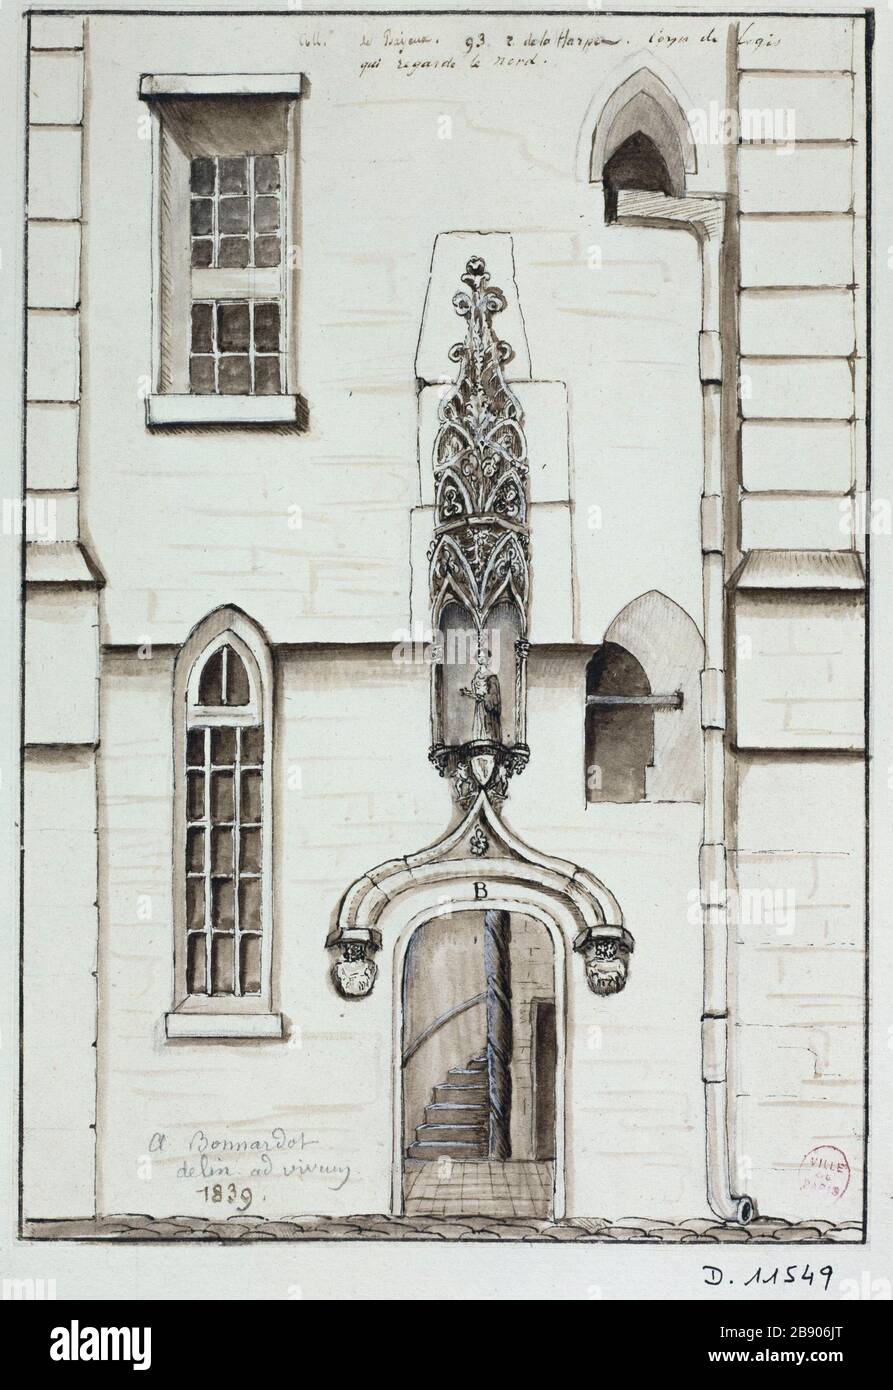 College of Bayeux, 93 Rue de la Harpe Alfred Bonnardot (1808-1884). Collège de Bayeux, 93 rue de la Harpe. Plume, lavis et rehaut de blanc sur papier gris clair, 1839. Parigi, musée Carnavalet. Foto Stock